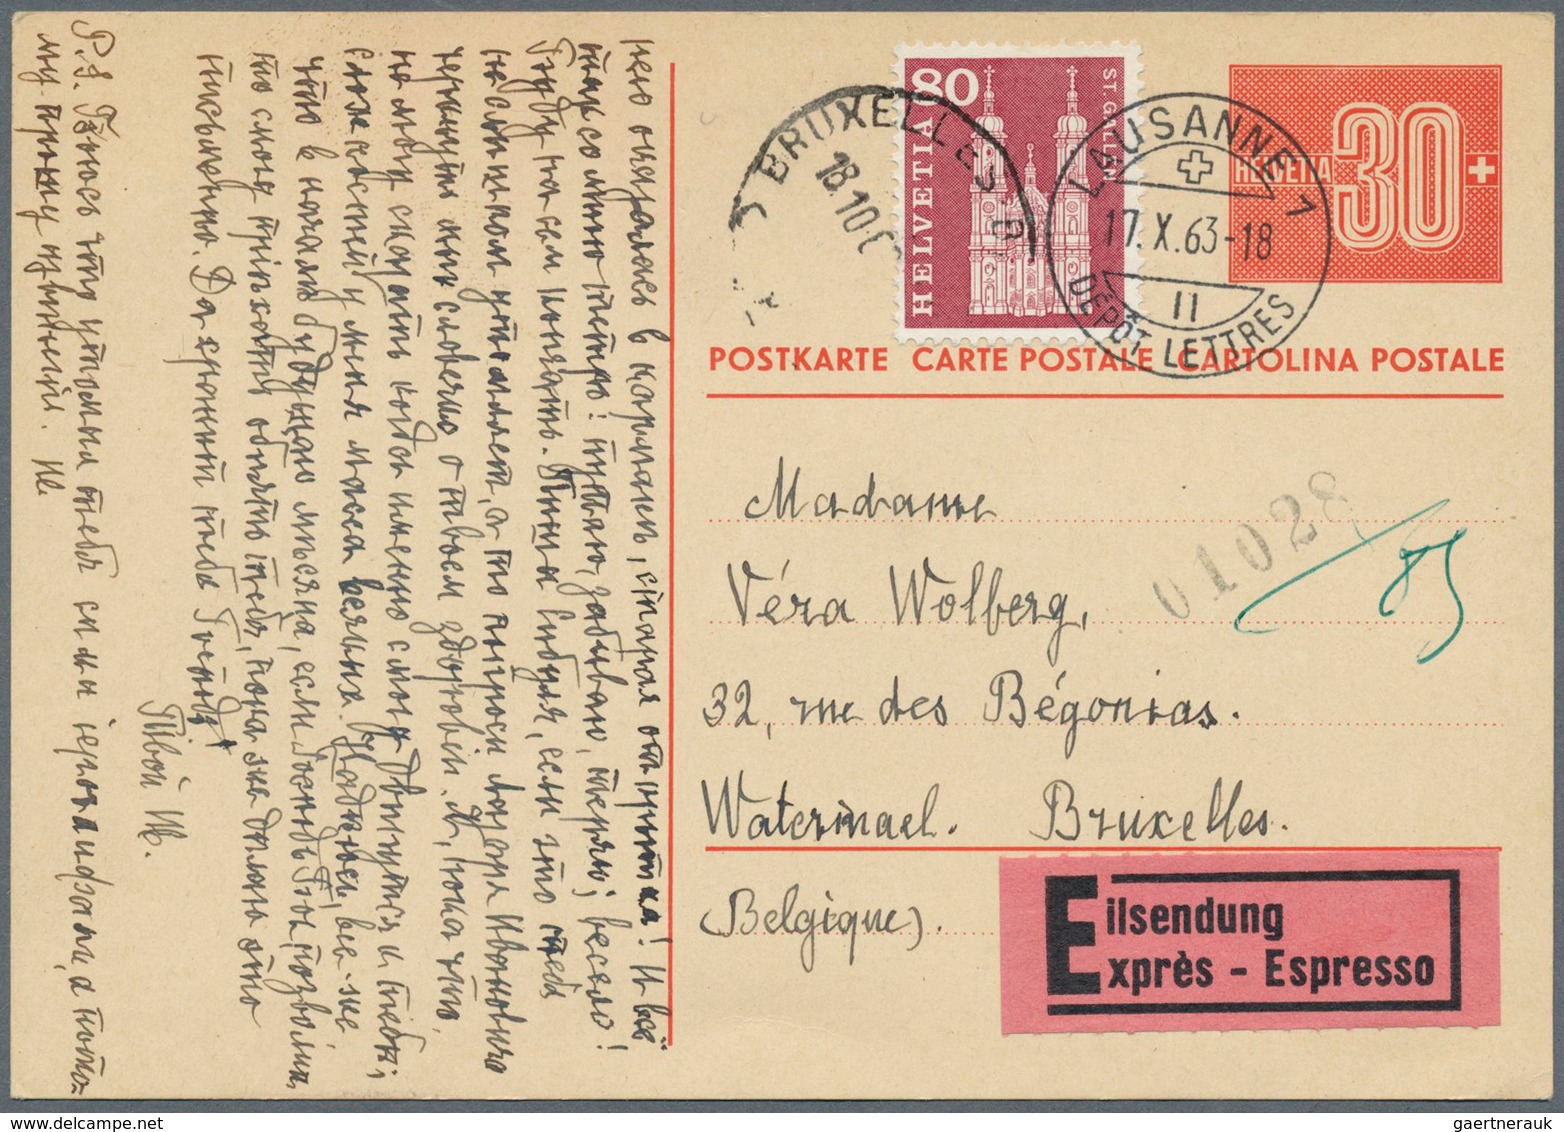 Schweiz - Ganzsachen: 1924 ab, sehr umfangreiche Sammlung mit über 1200 meist gebrauchten Ganzsachen